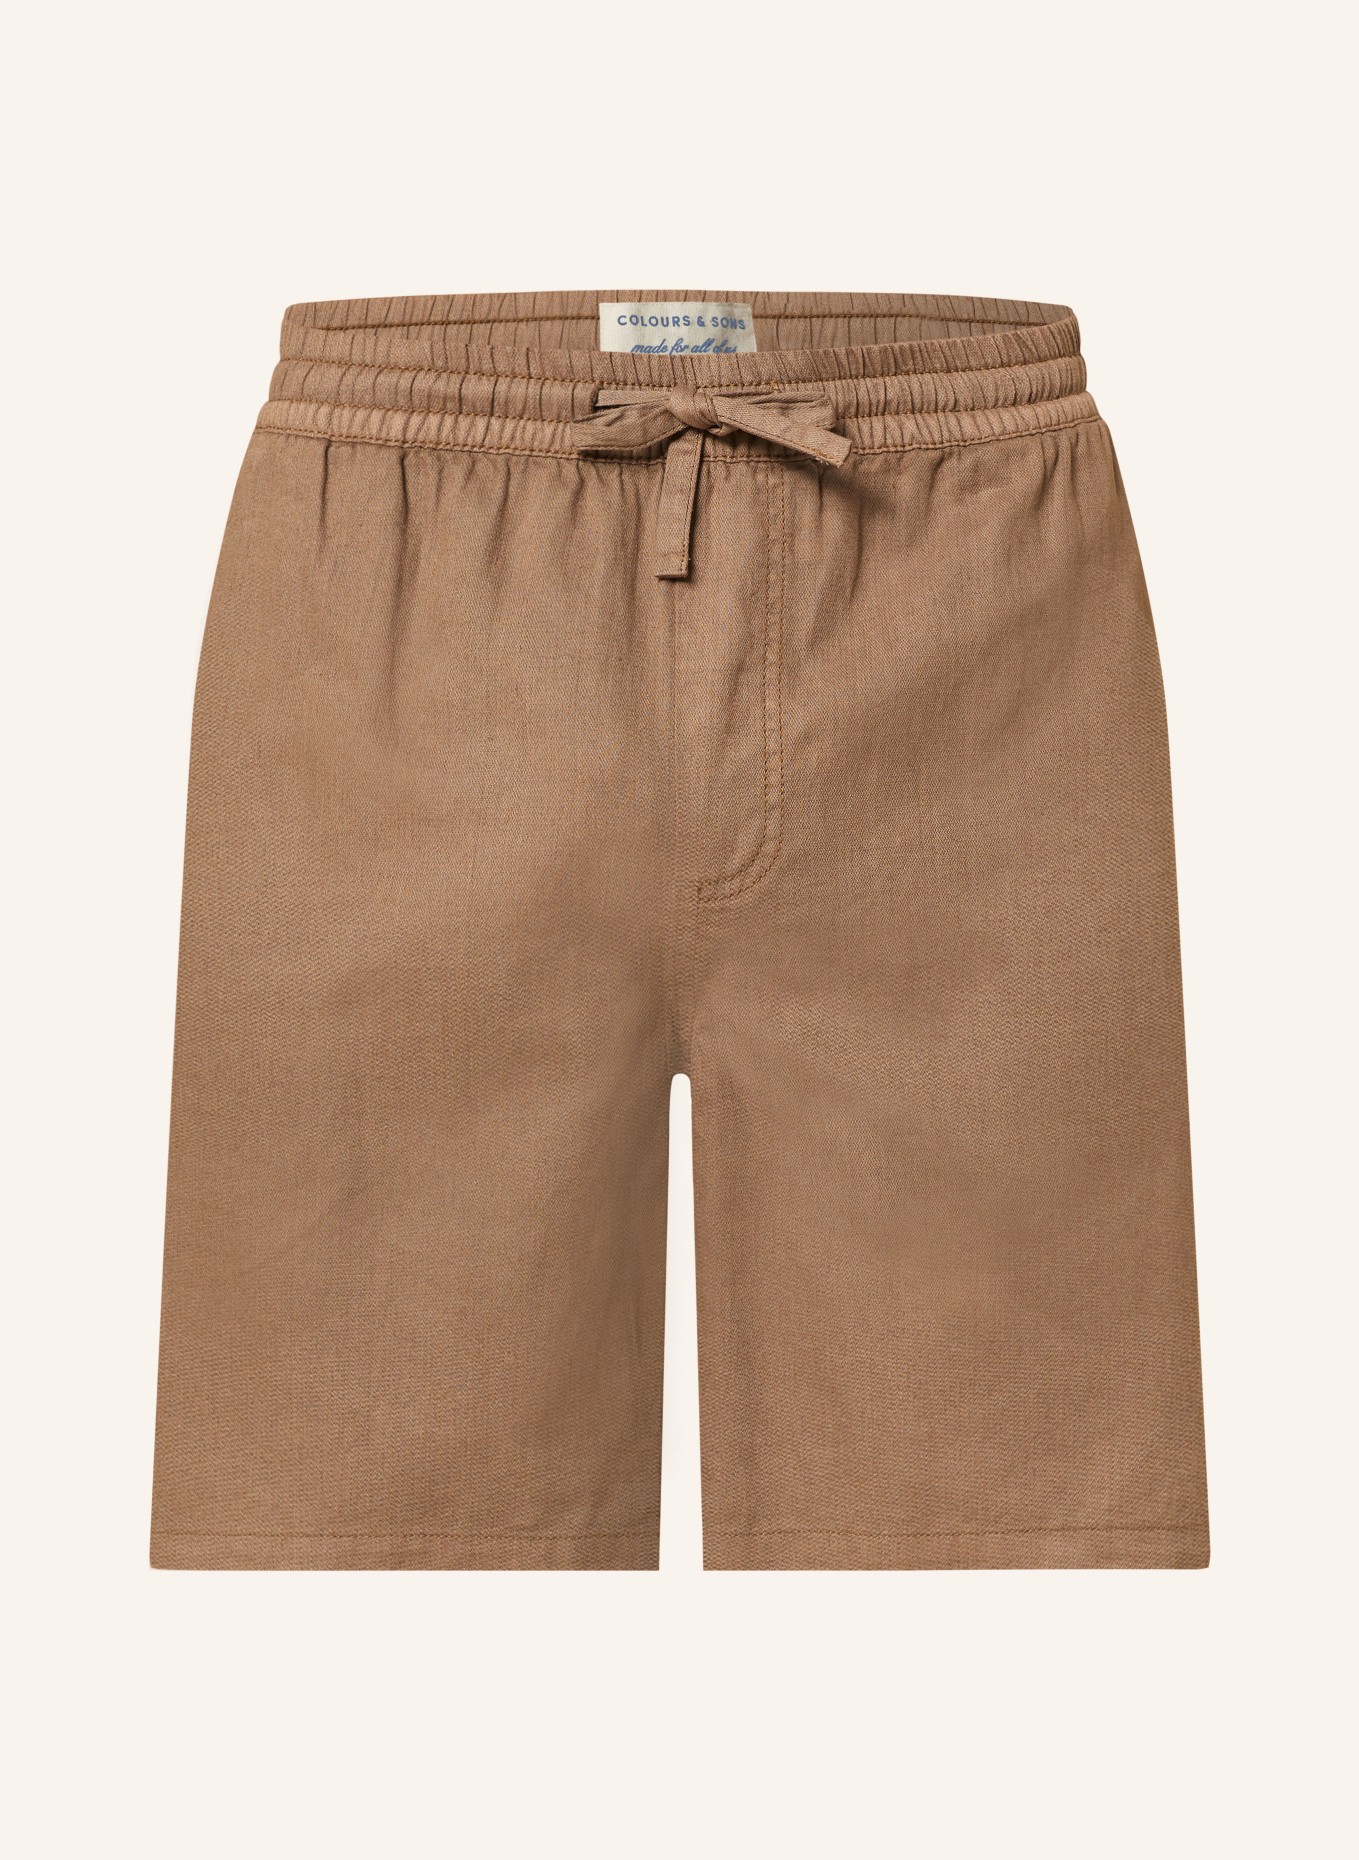 COLOURS & SONS Shorts mit Leinen, Farbe: BRAUN (Bild 1)